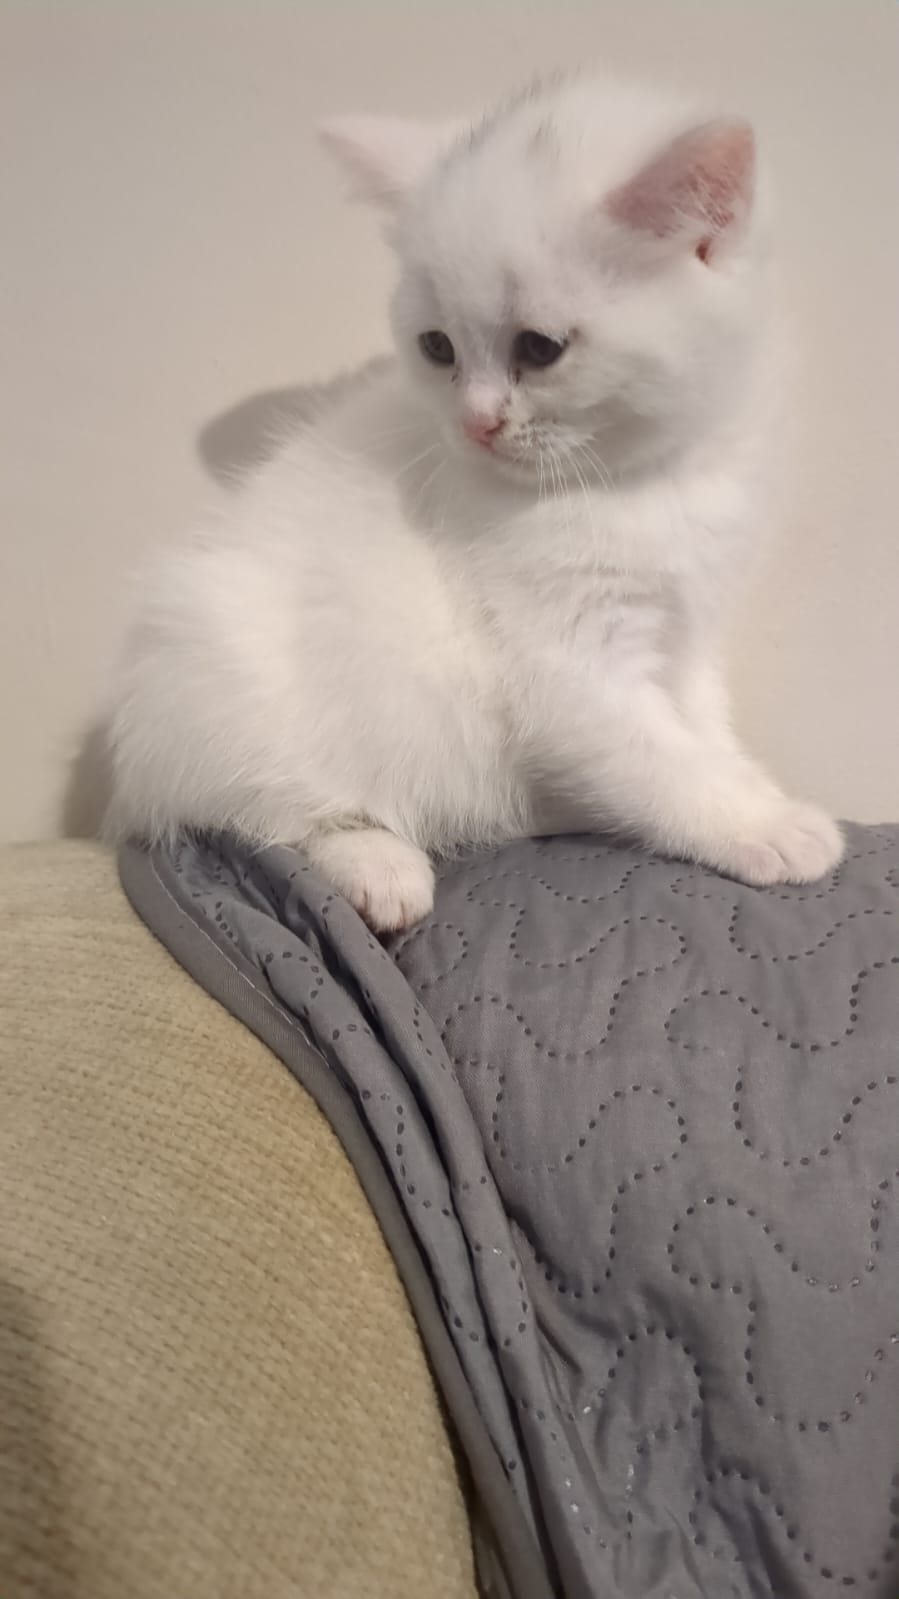 Kitten for sale 